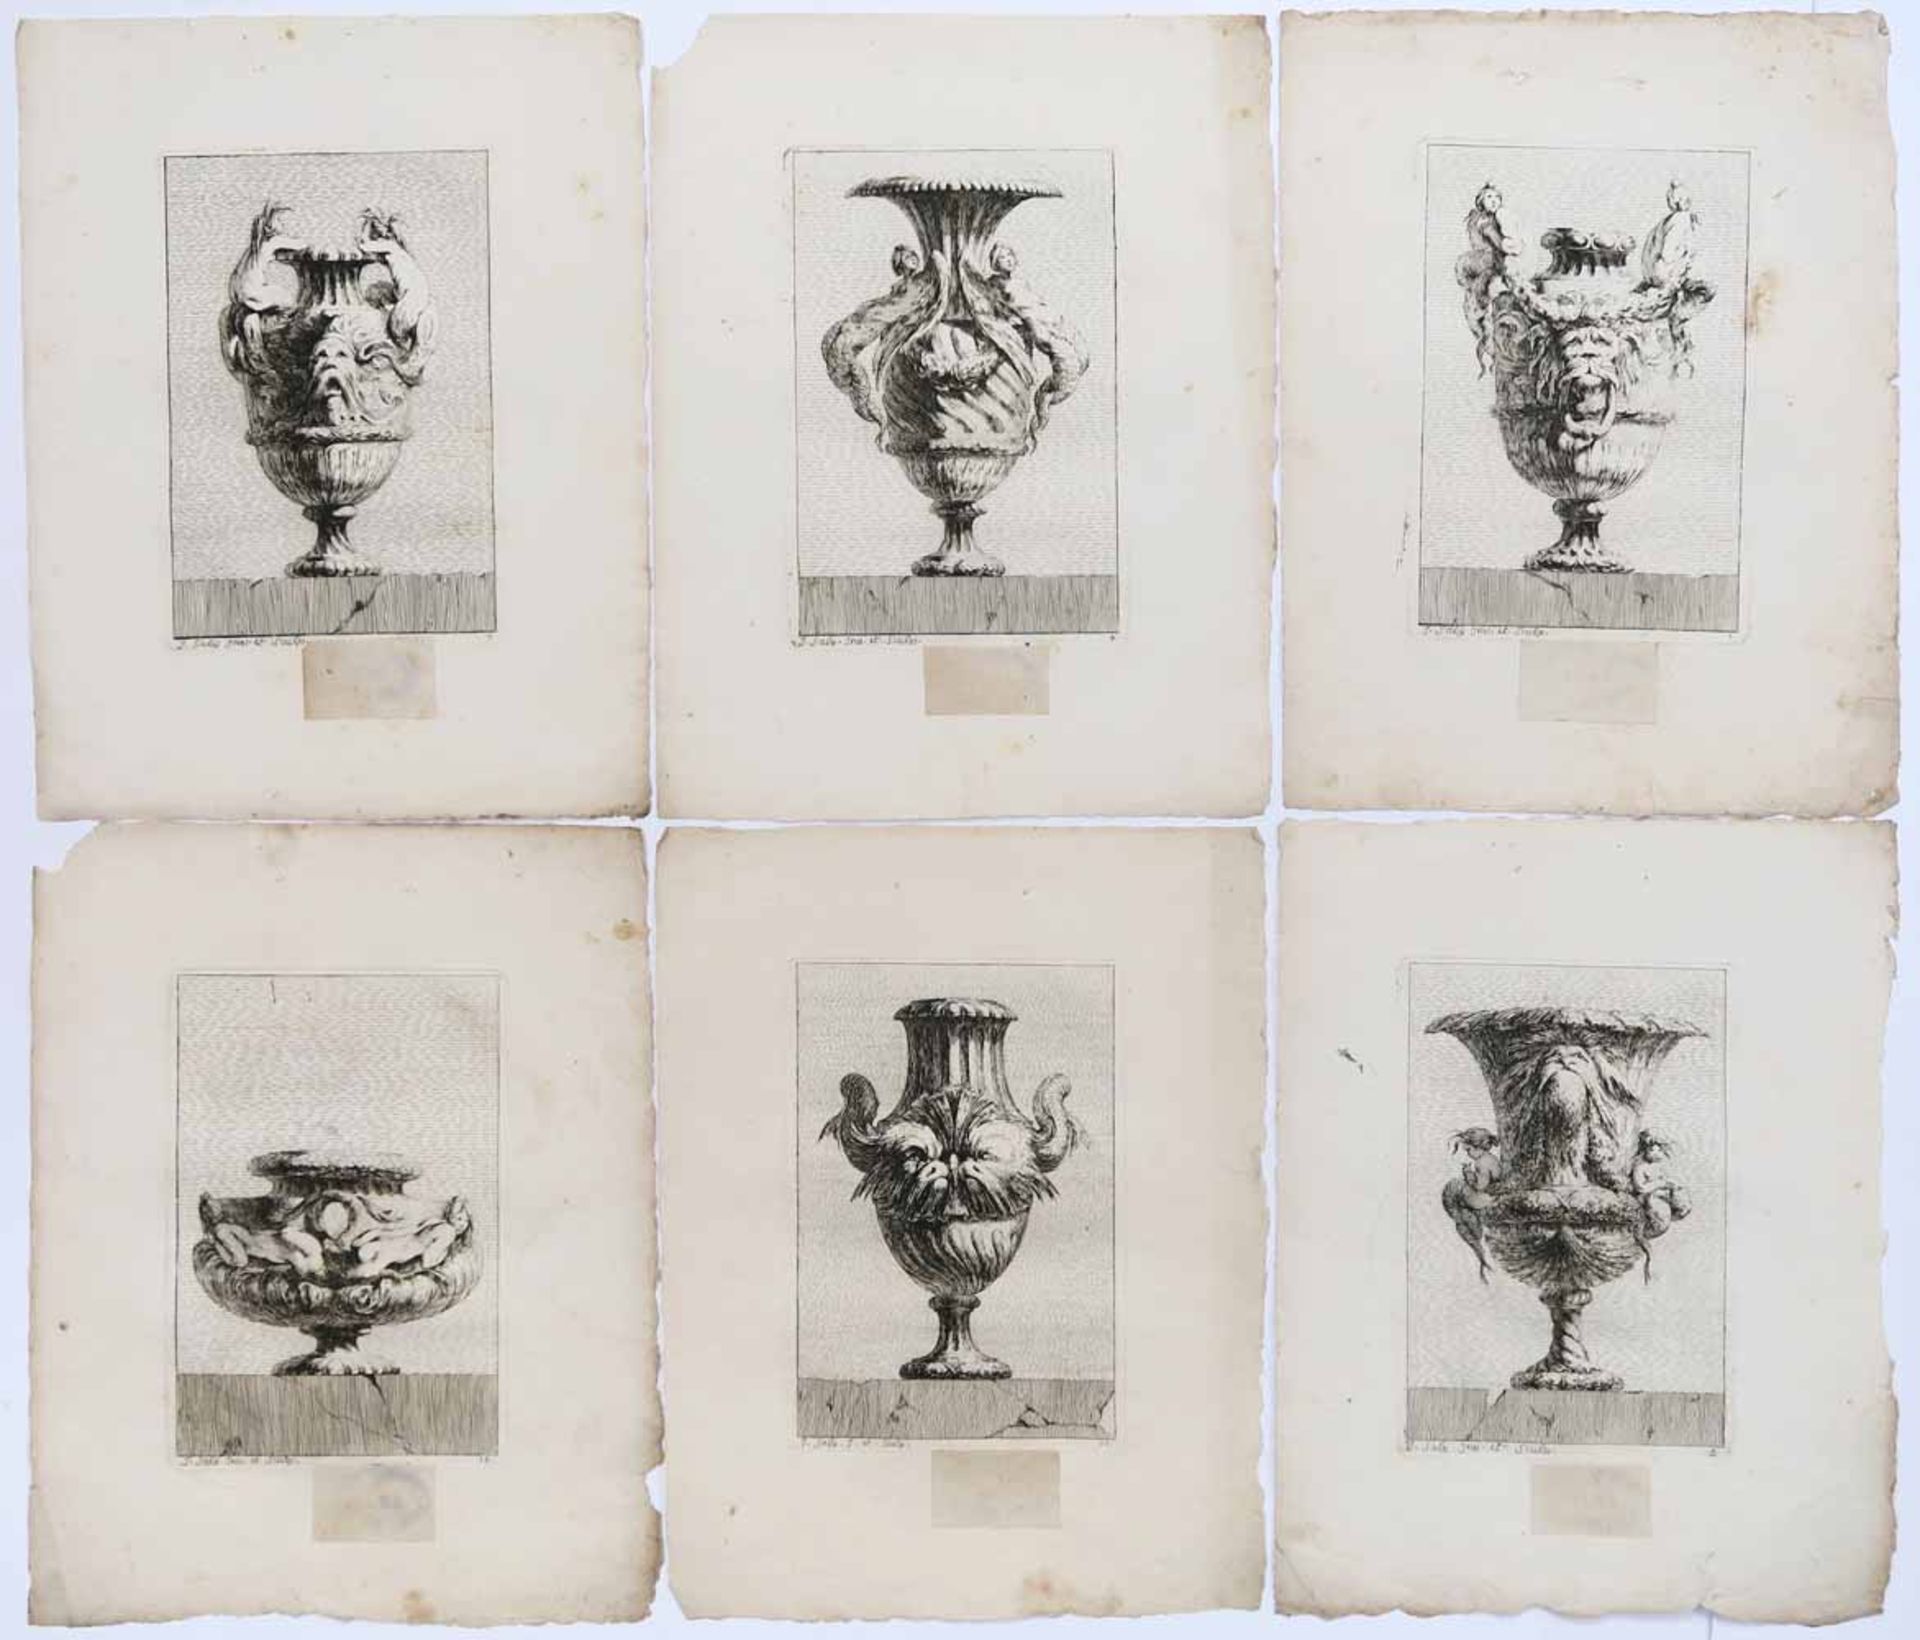 Saly, Jacques François Joseph1717 Valenciennes - 1776 ParisSuite de Vases14 Radierungen (von 31)